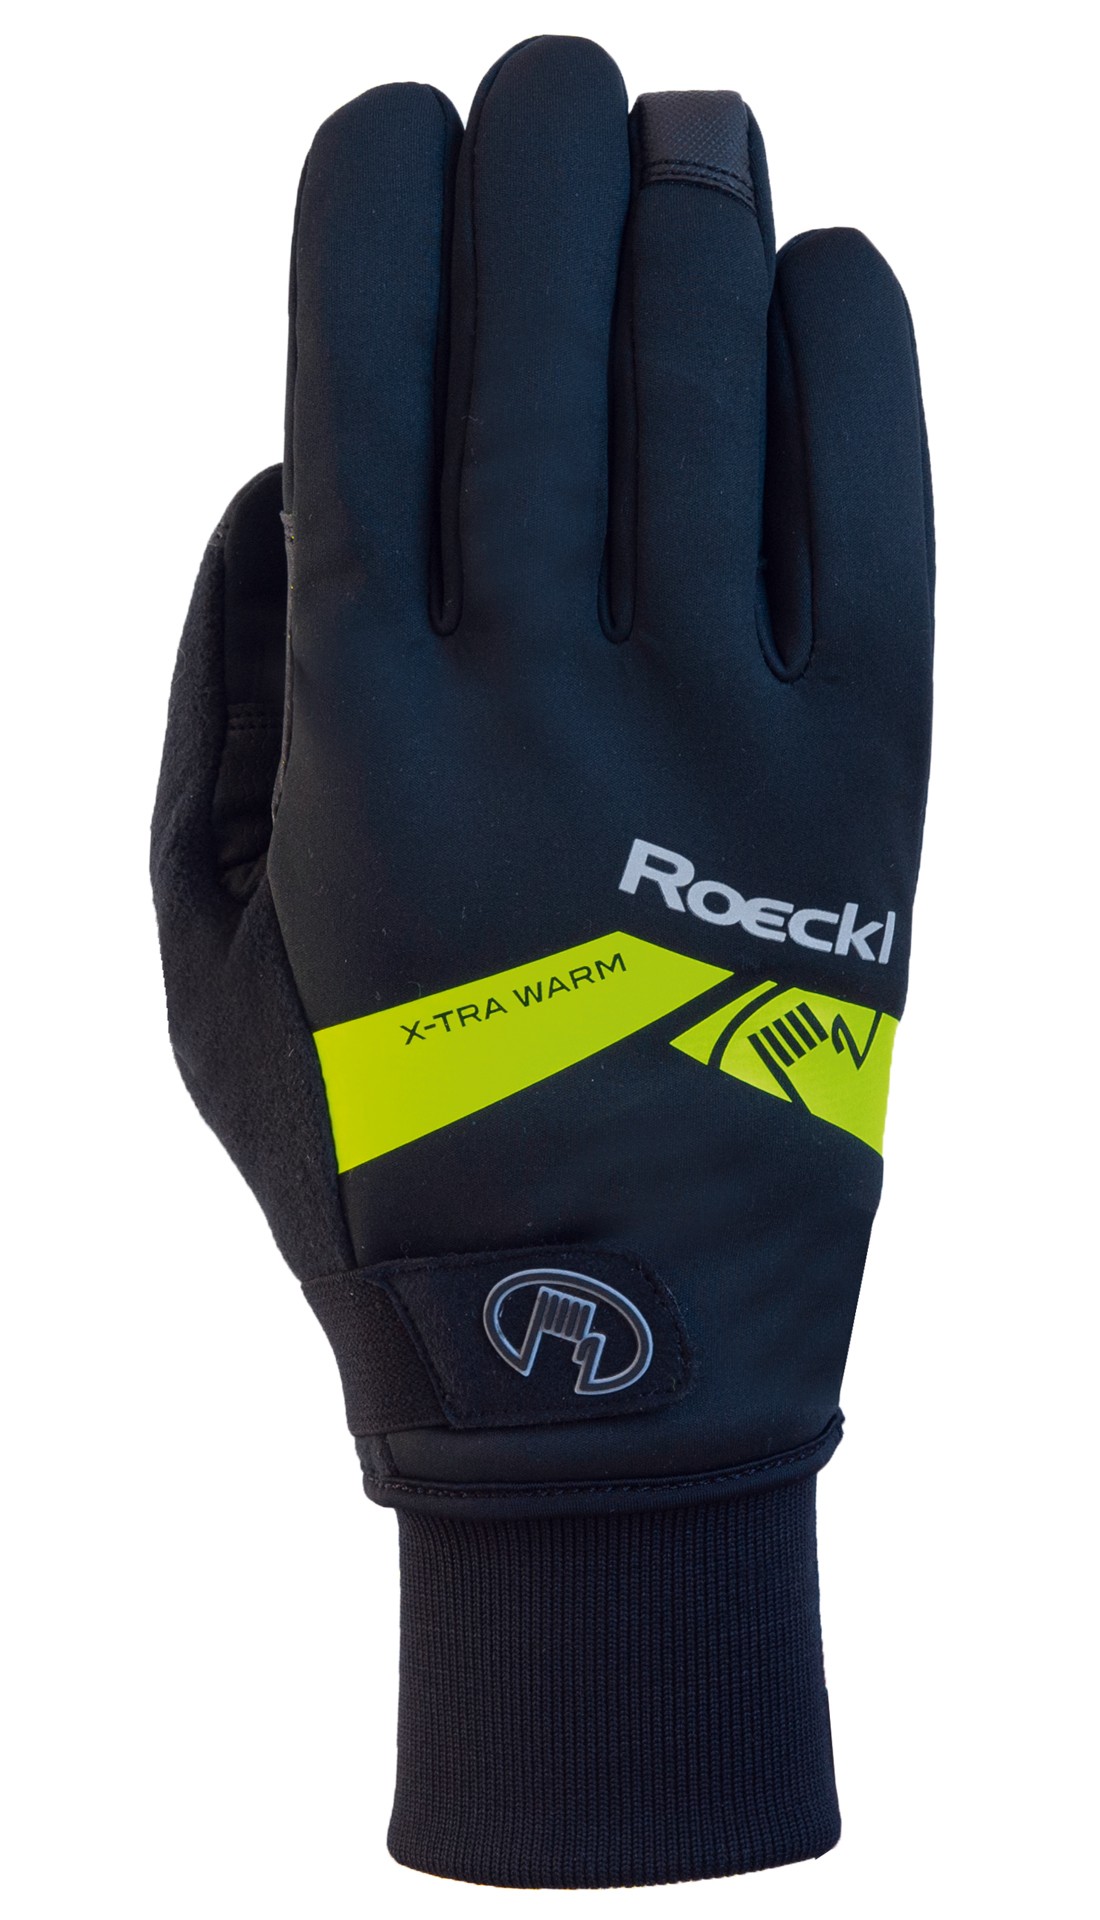 Roeckl villach gants de cyclisme noir jaune